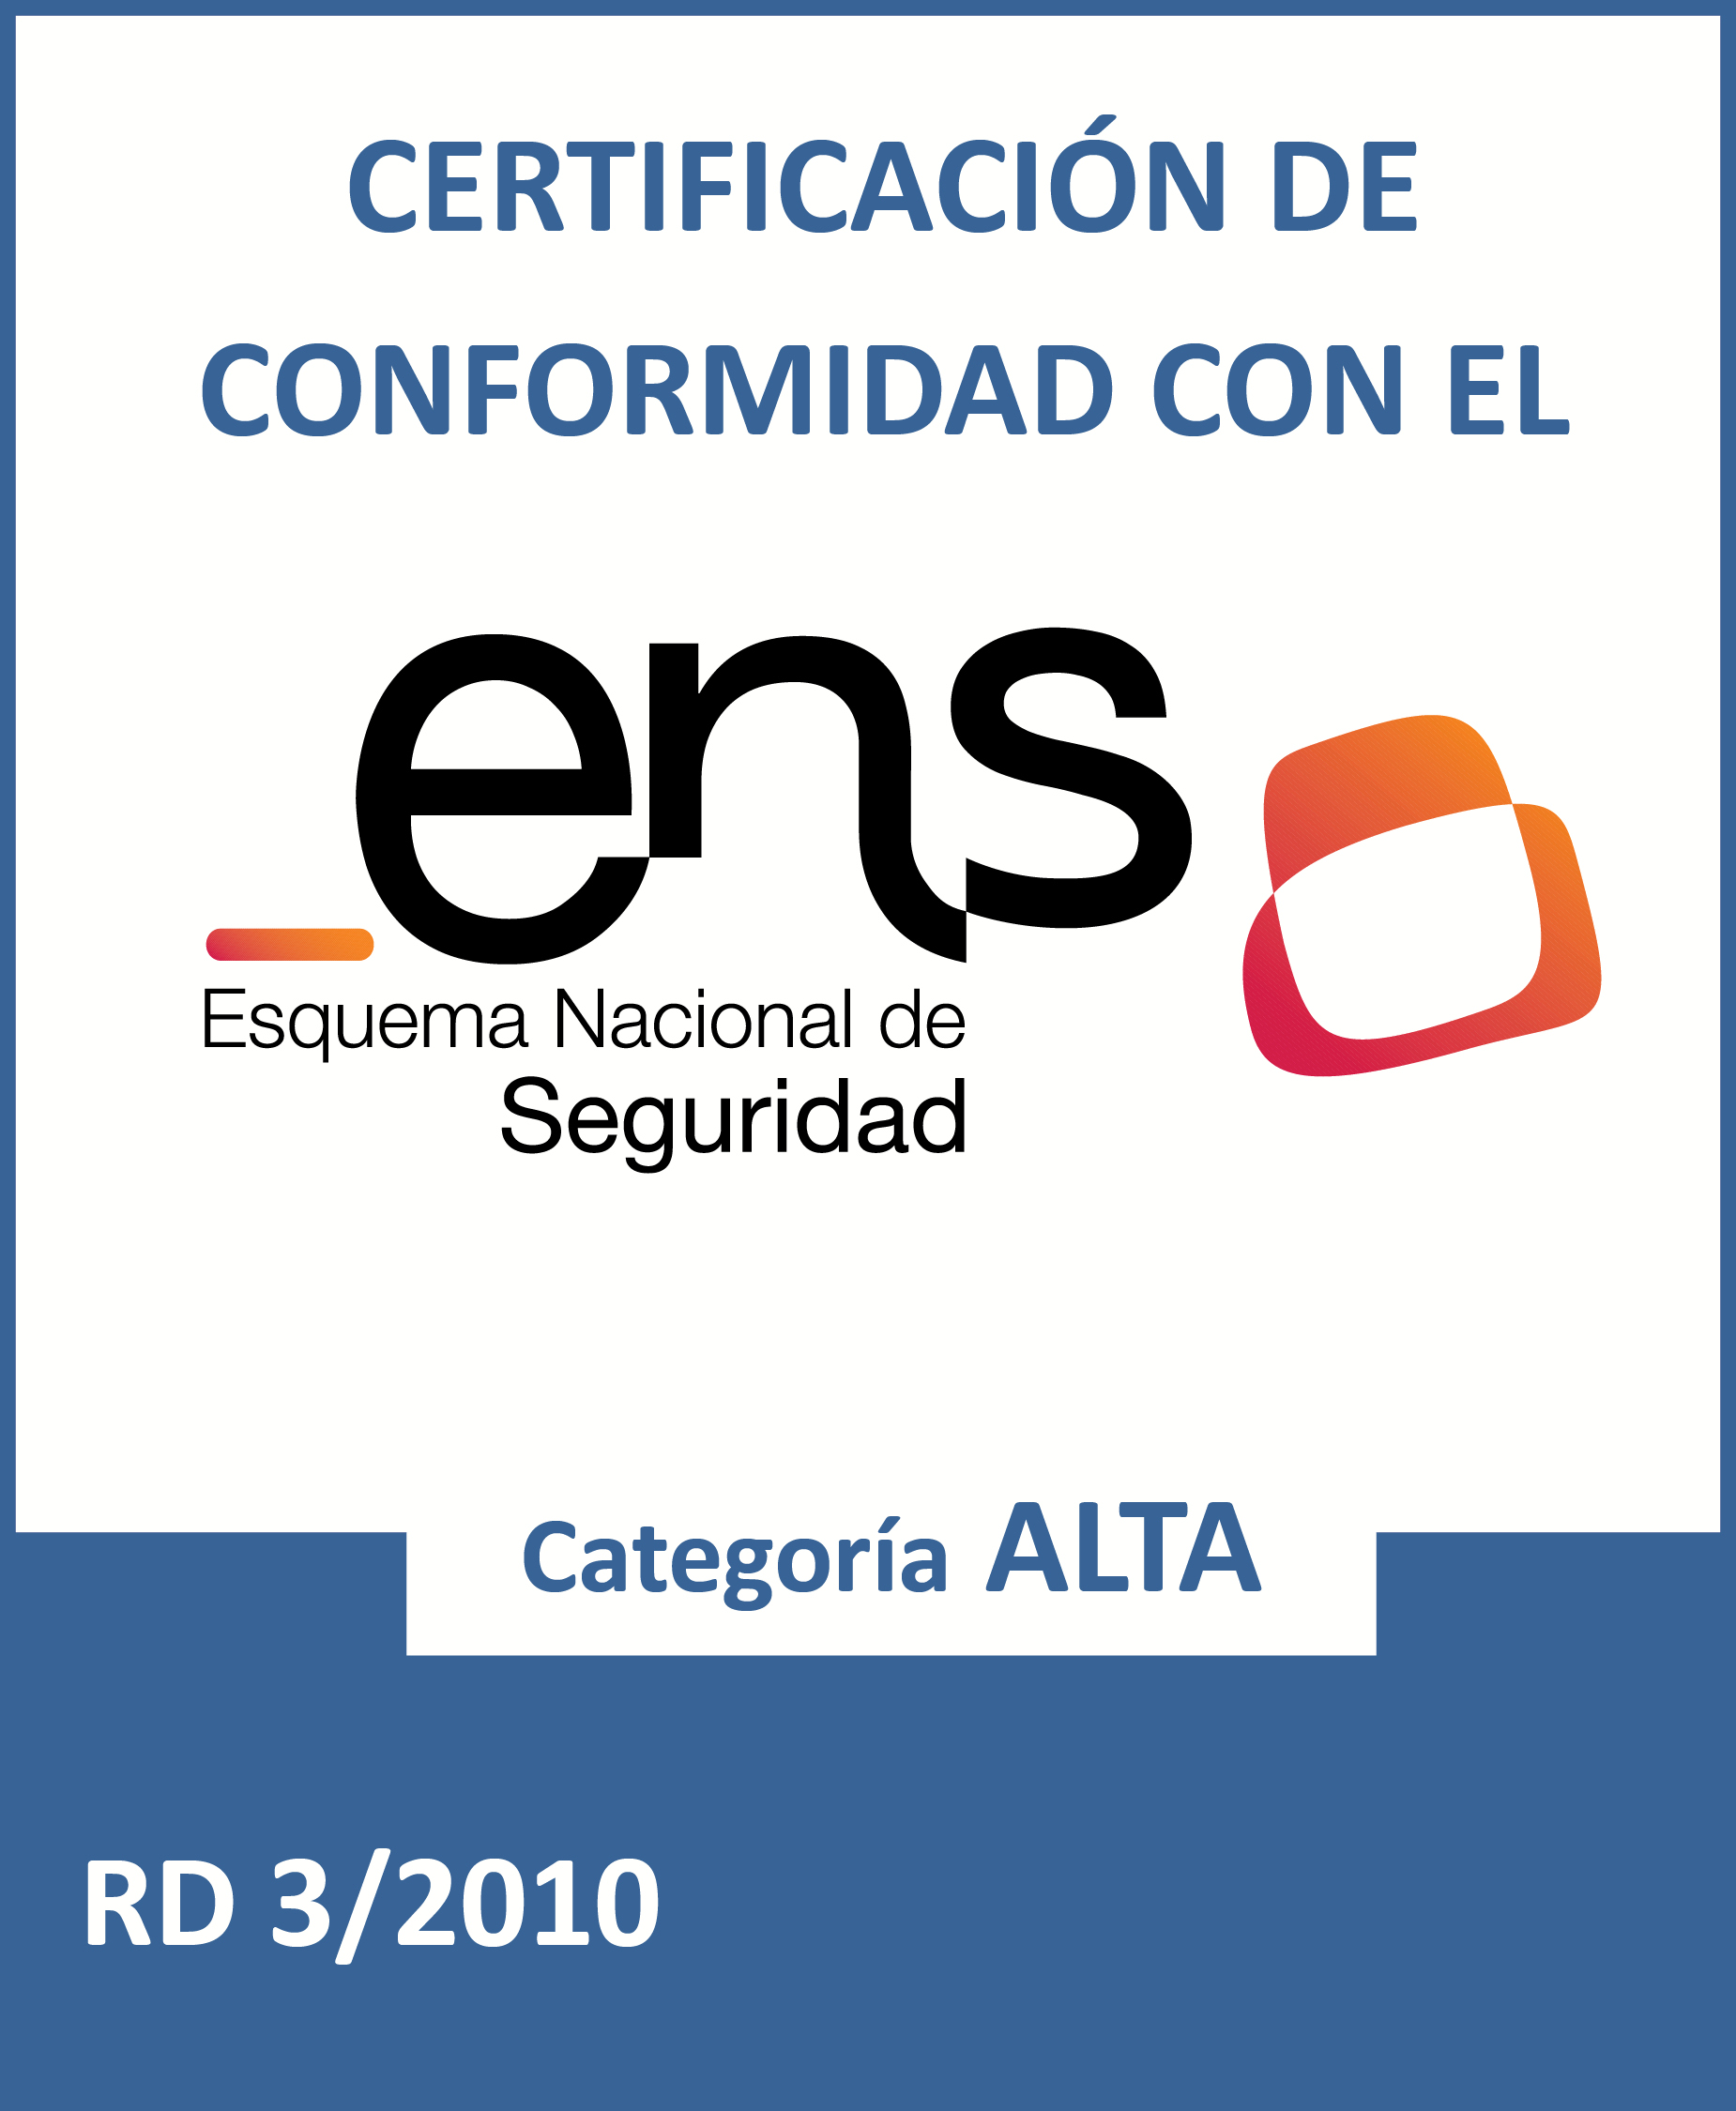 ENS - Certificado de Conformidad con el Esquema Nacional de Seguridad - Categora Alta (Abre nueva ventana)